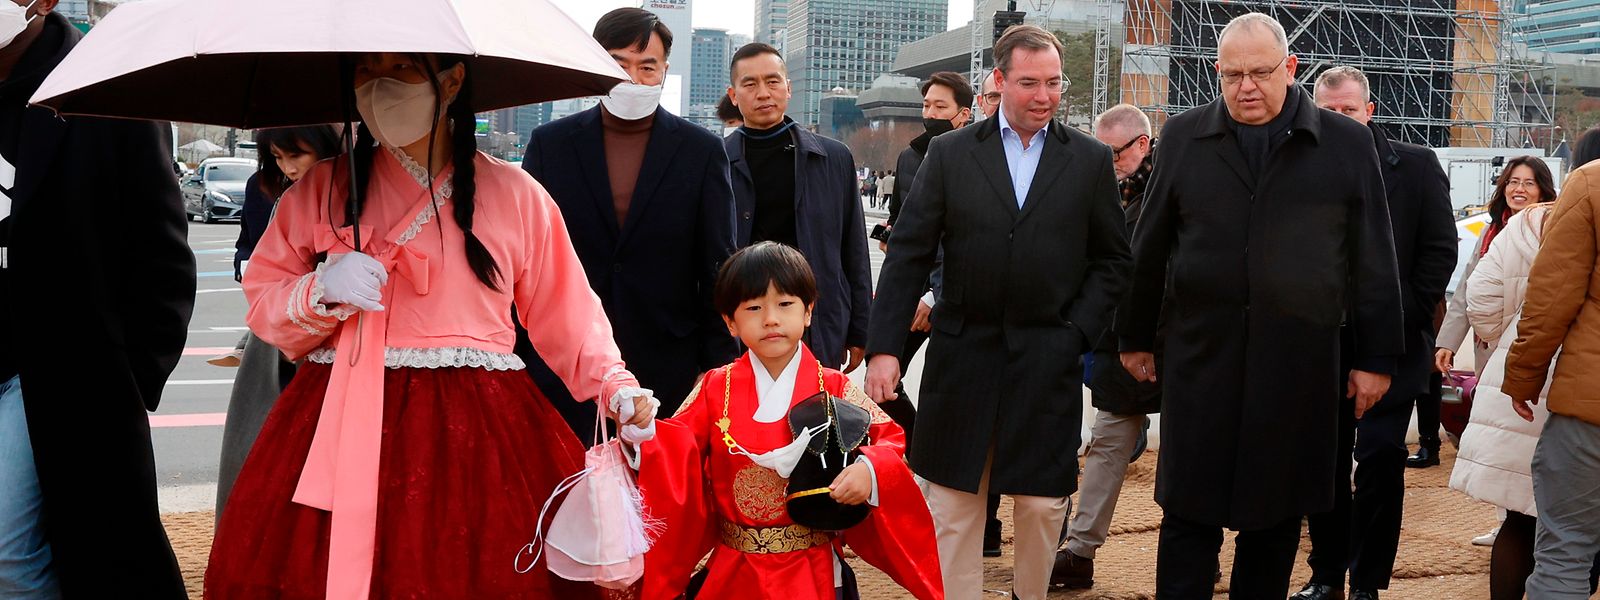 Erbgroßherzog Guillaume und Botschafter Pierre Ferring auf dem Weg zur größten der Tempelanlagen in Seoul.